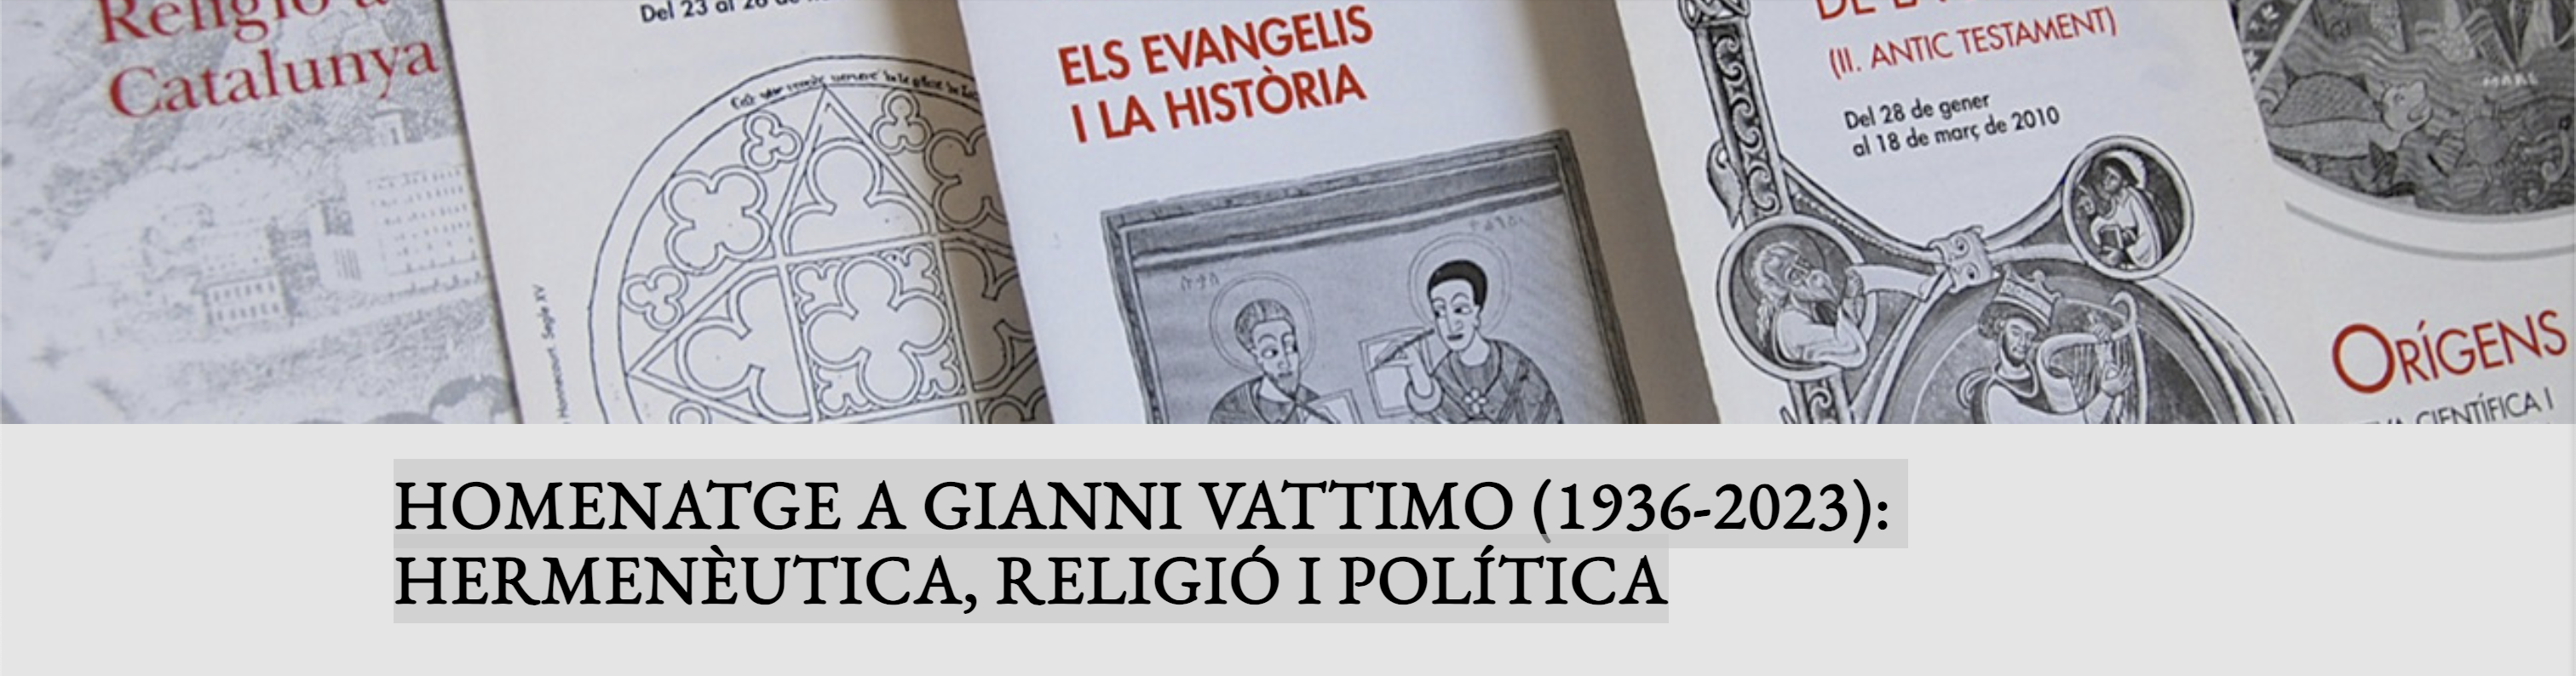 Homenatge a Gianni Vattimo: Hermenèutica, Religió i Política